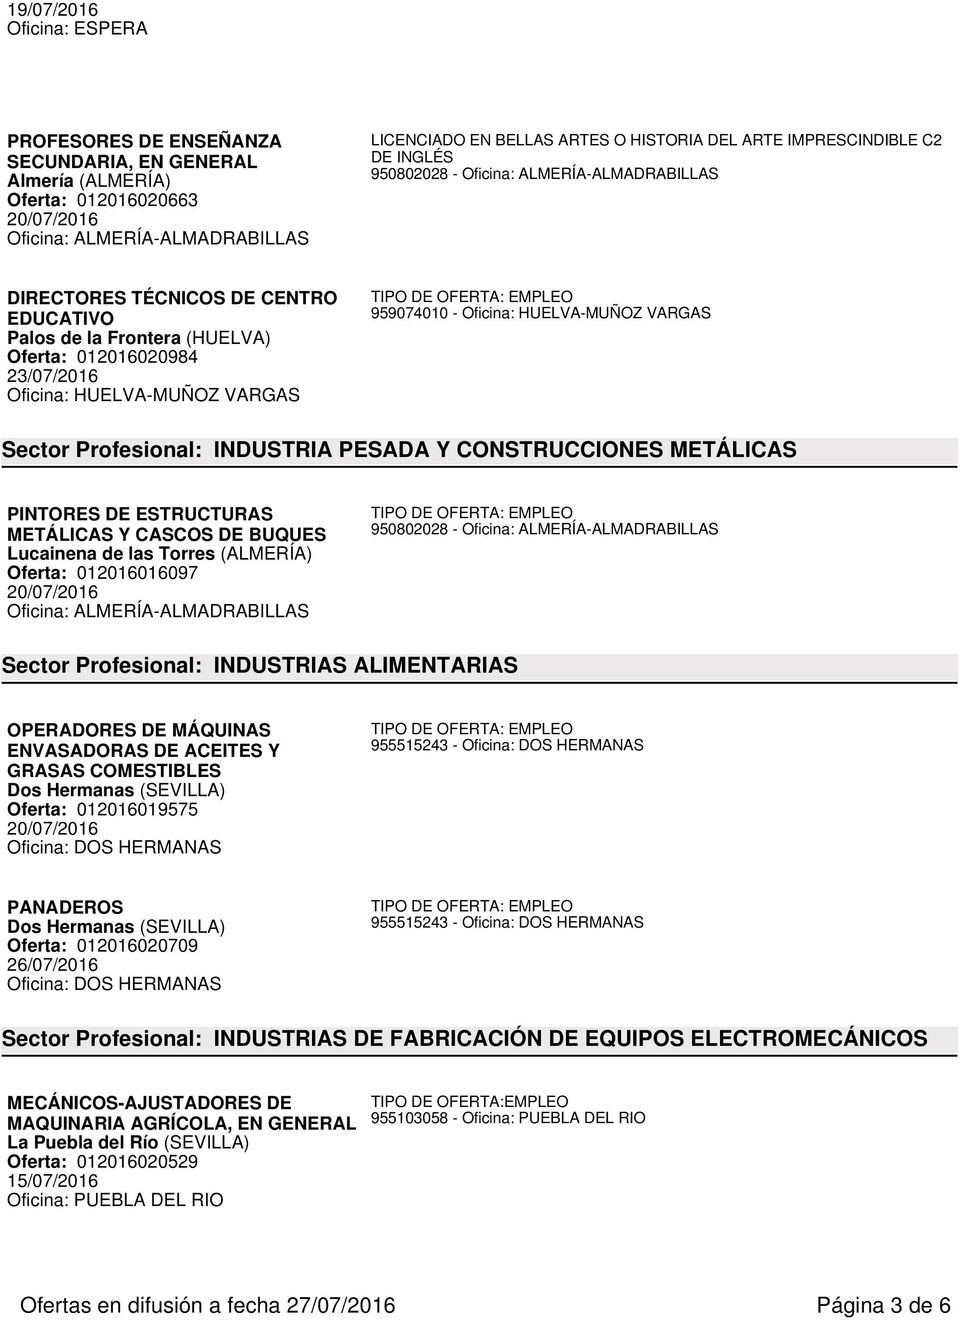 Oficina: HUELVA-MUÑOZ VARGAS Sector Profesional: INDUSTRIA PESADA Y CONSTRUCCIONES METÁLICAS PINTORES DE ESTRUCTURAS METÁLICAS Y CASCOS DE BUQUES Lucainena de las Torres (ALMERÍA) Oferta: